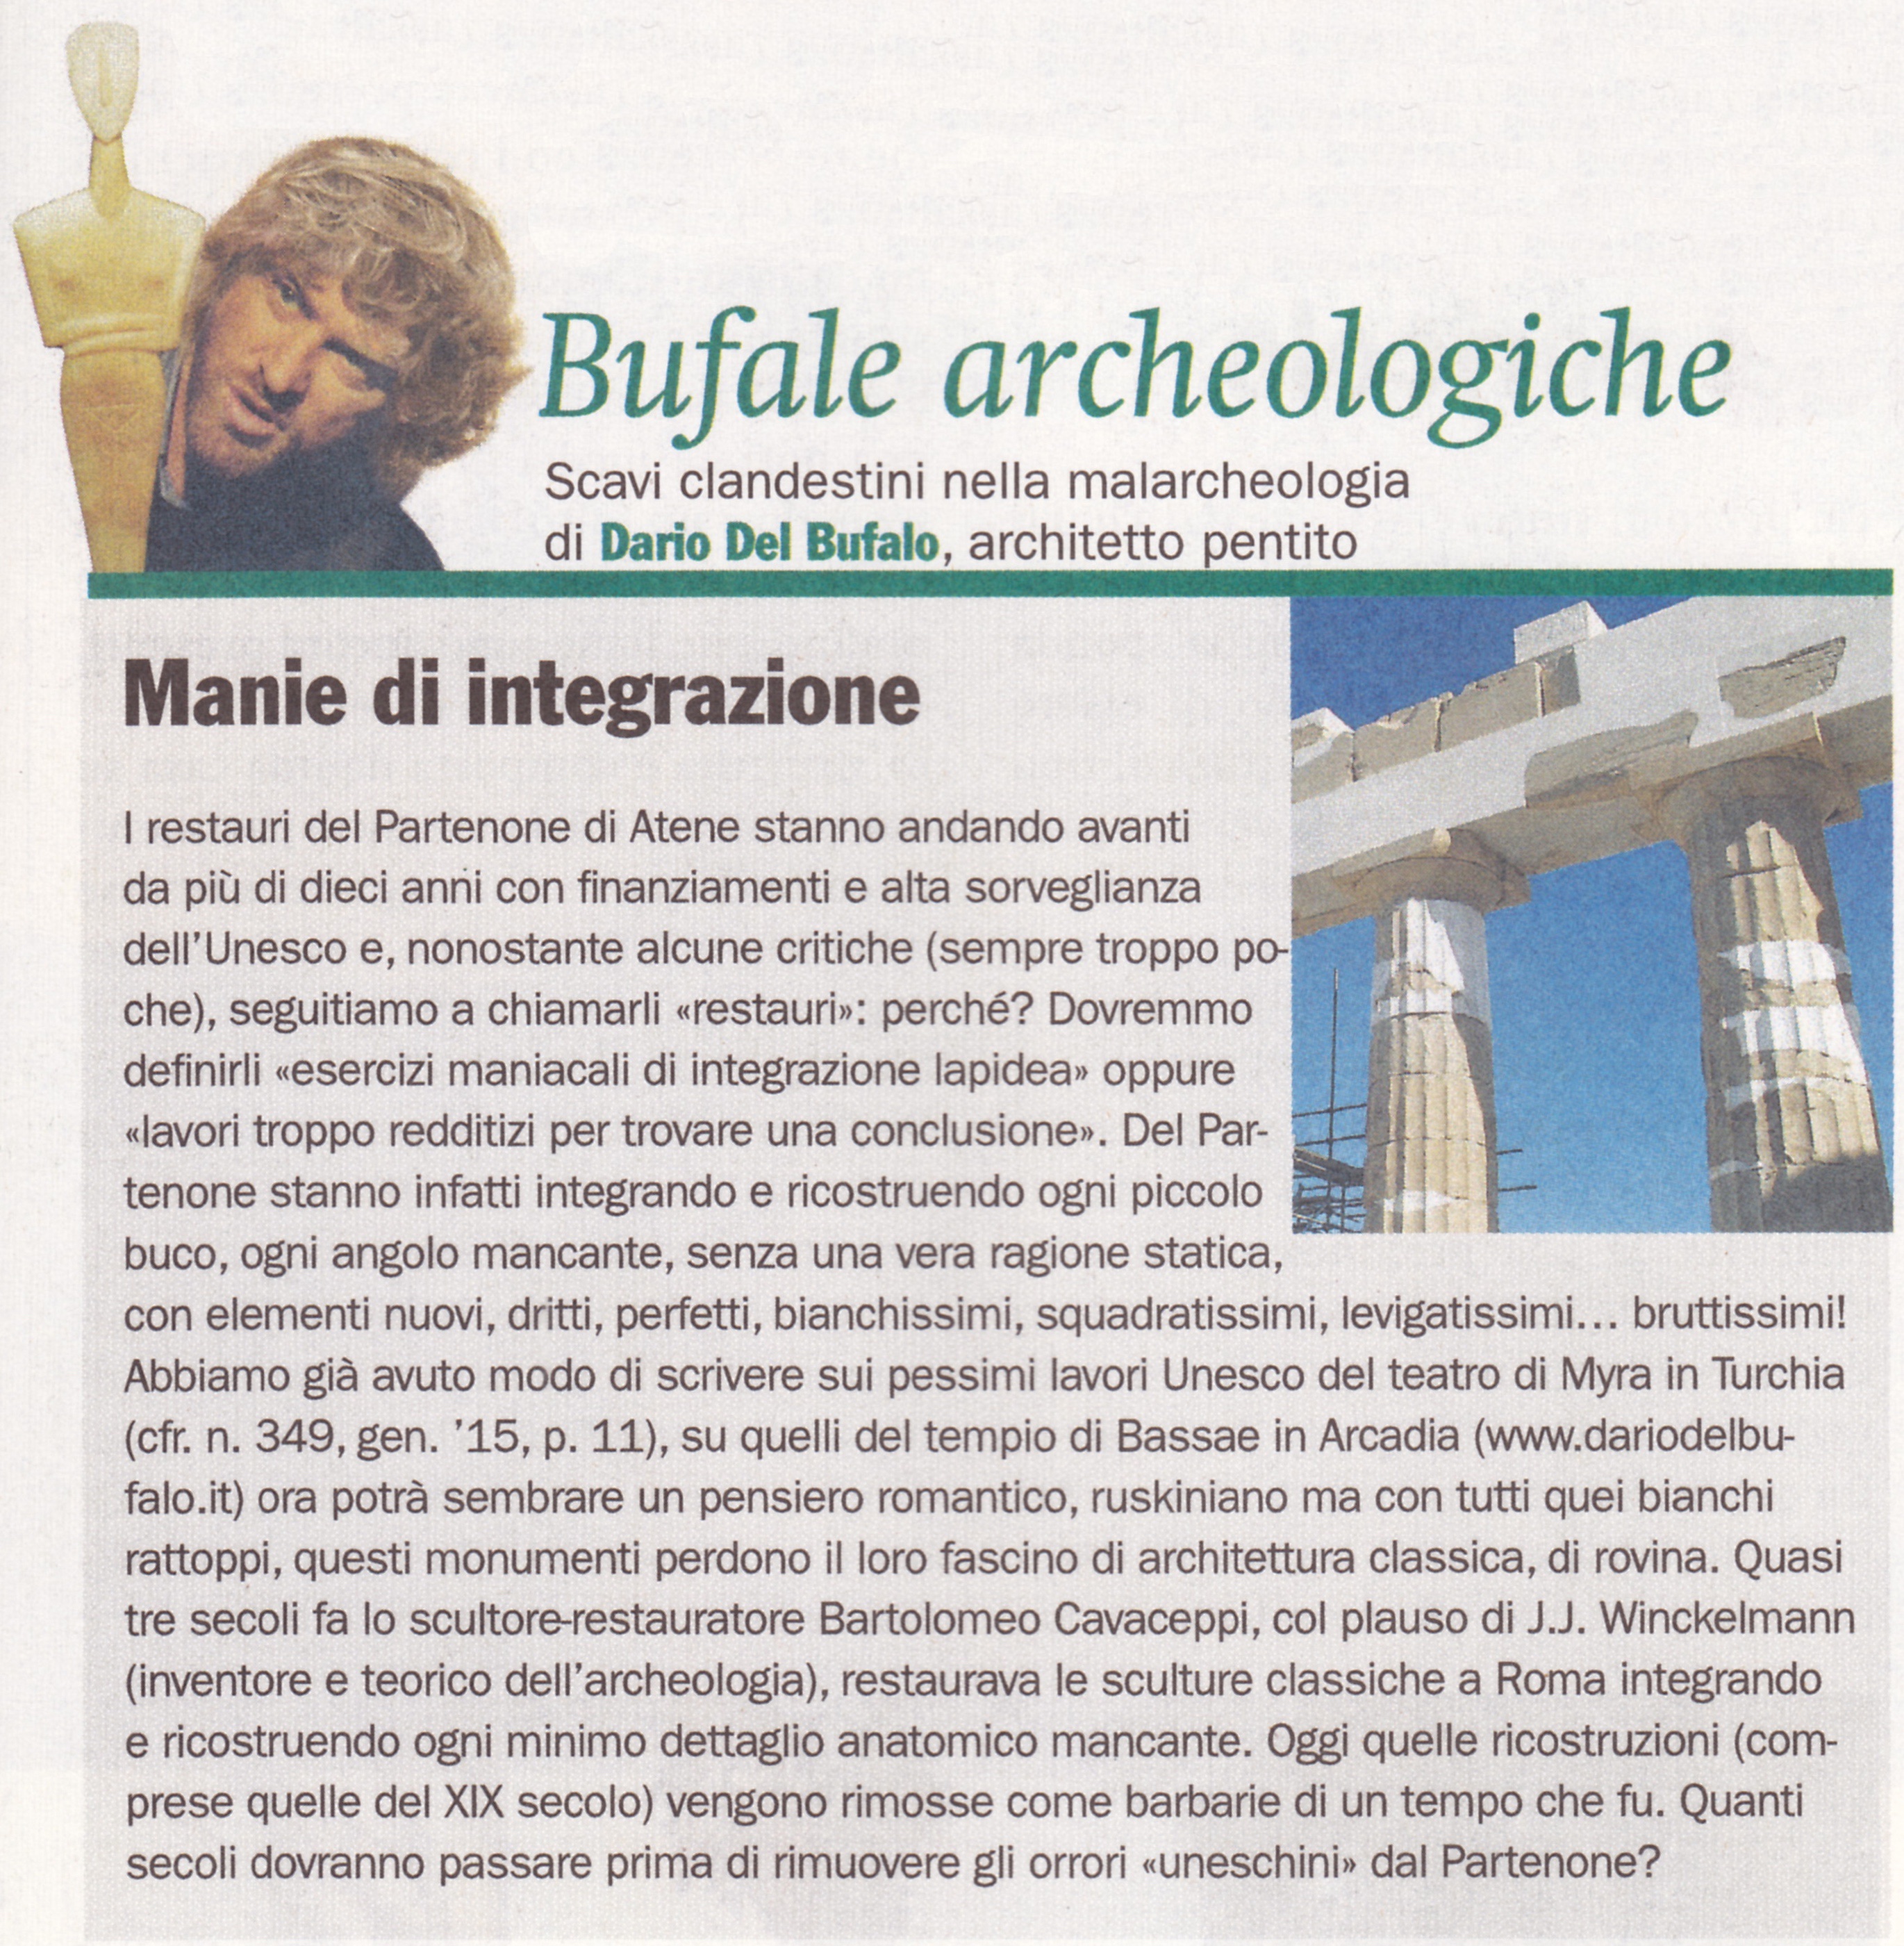 Dario Del Bufalo BUFALE ARCHEOLOGICHE dal Giornale dell’Arte Aprile 2015 Manie di integrazione